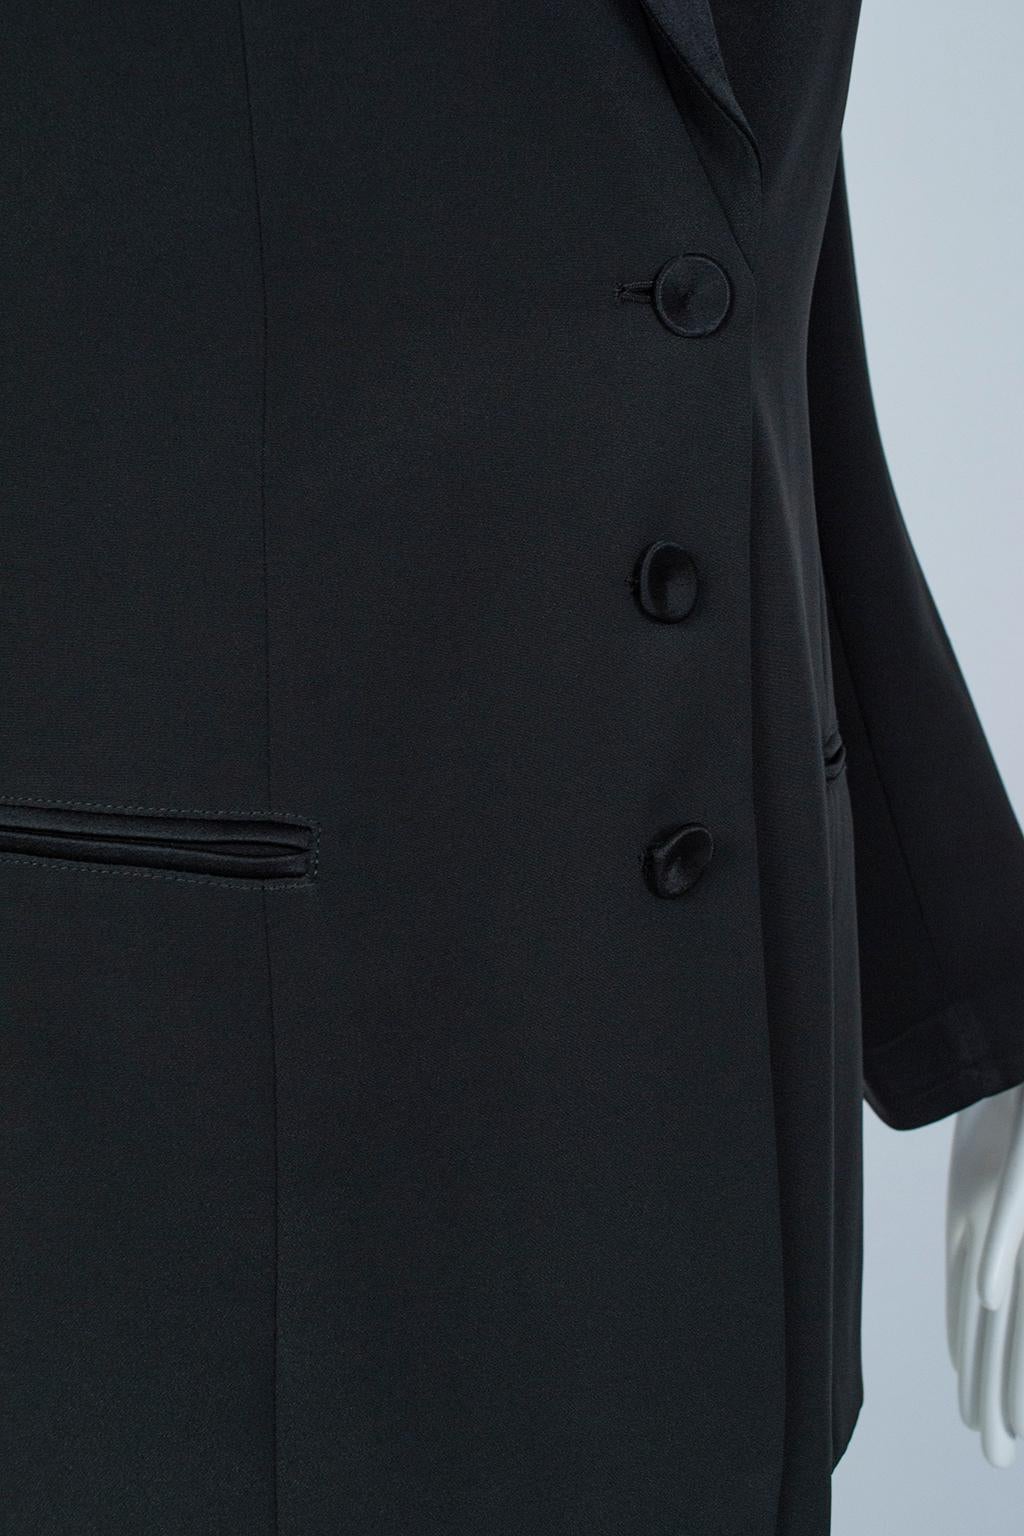 Giorgio Armani Black Silk Faille “Le Smoking” Tuxedo Blazer Jacket - It 42, 2001 For Sale 1